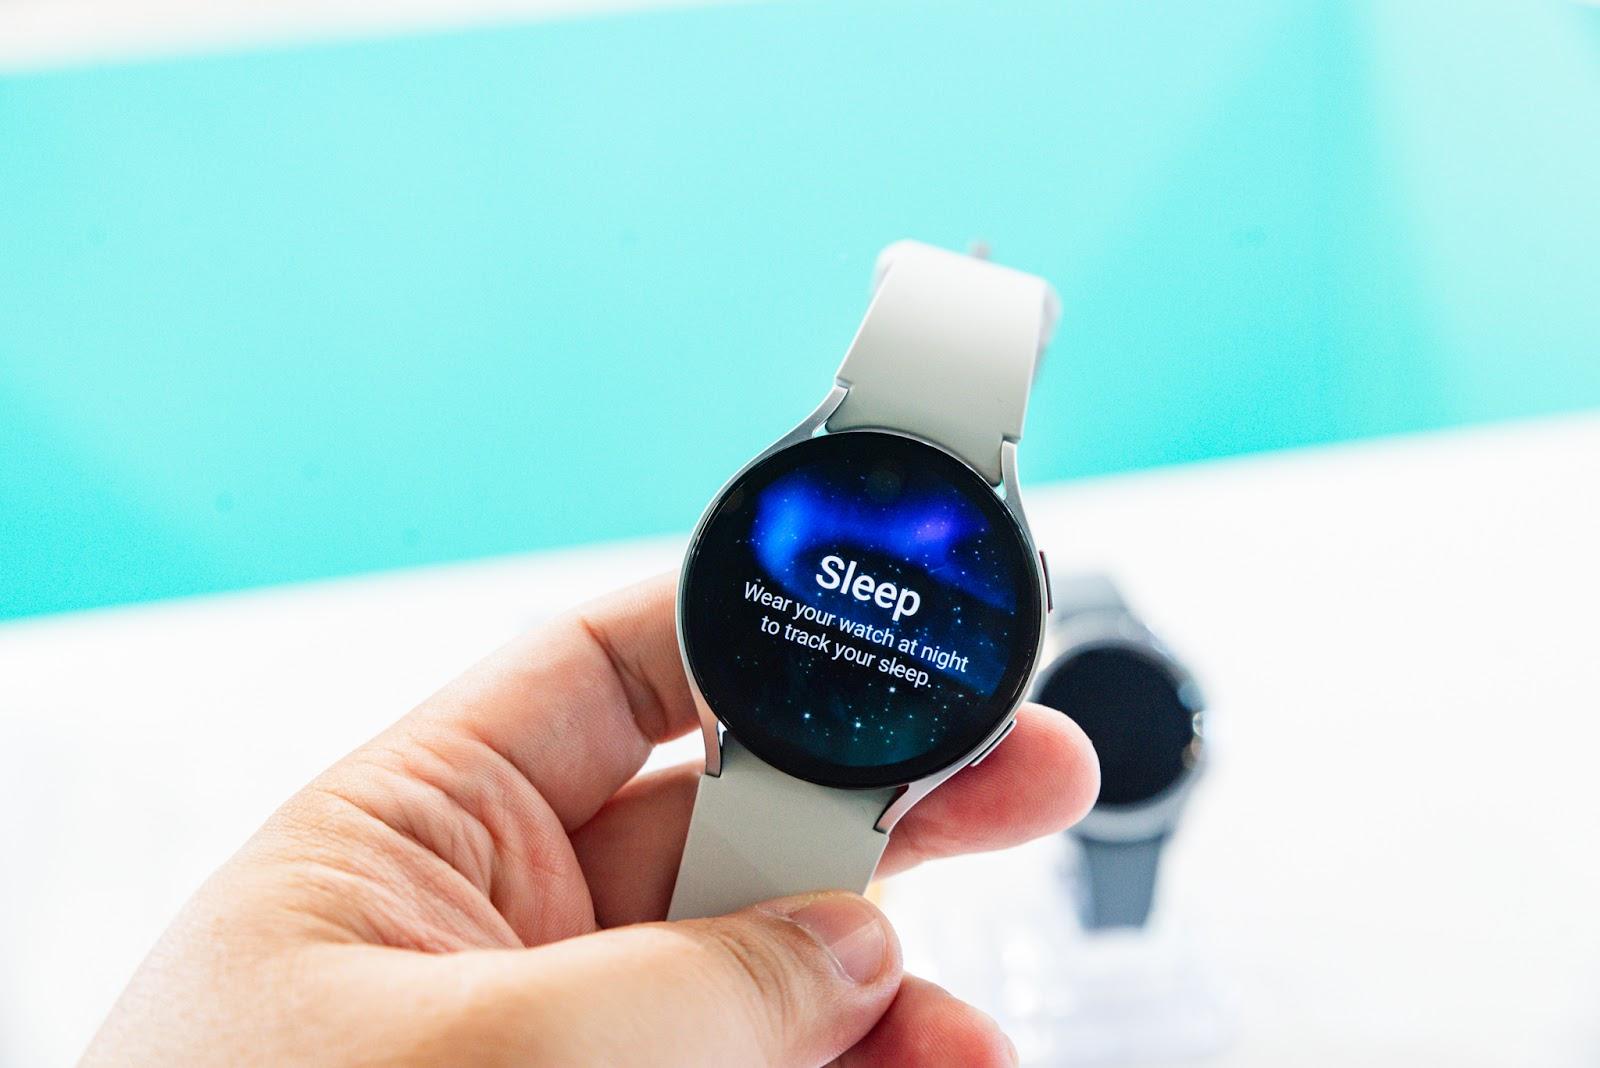 Hơn cả một phụ kiện thời trang, Galaxy Watch6 biến người dùng thành “chuyên gia” chăm sóc sức khỏe của chính mình - Ảnh 2.